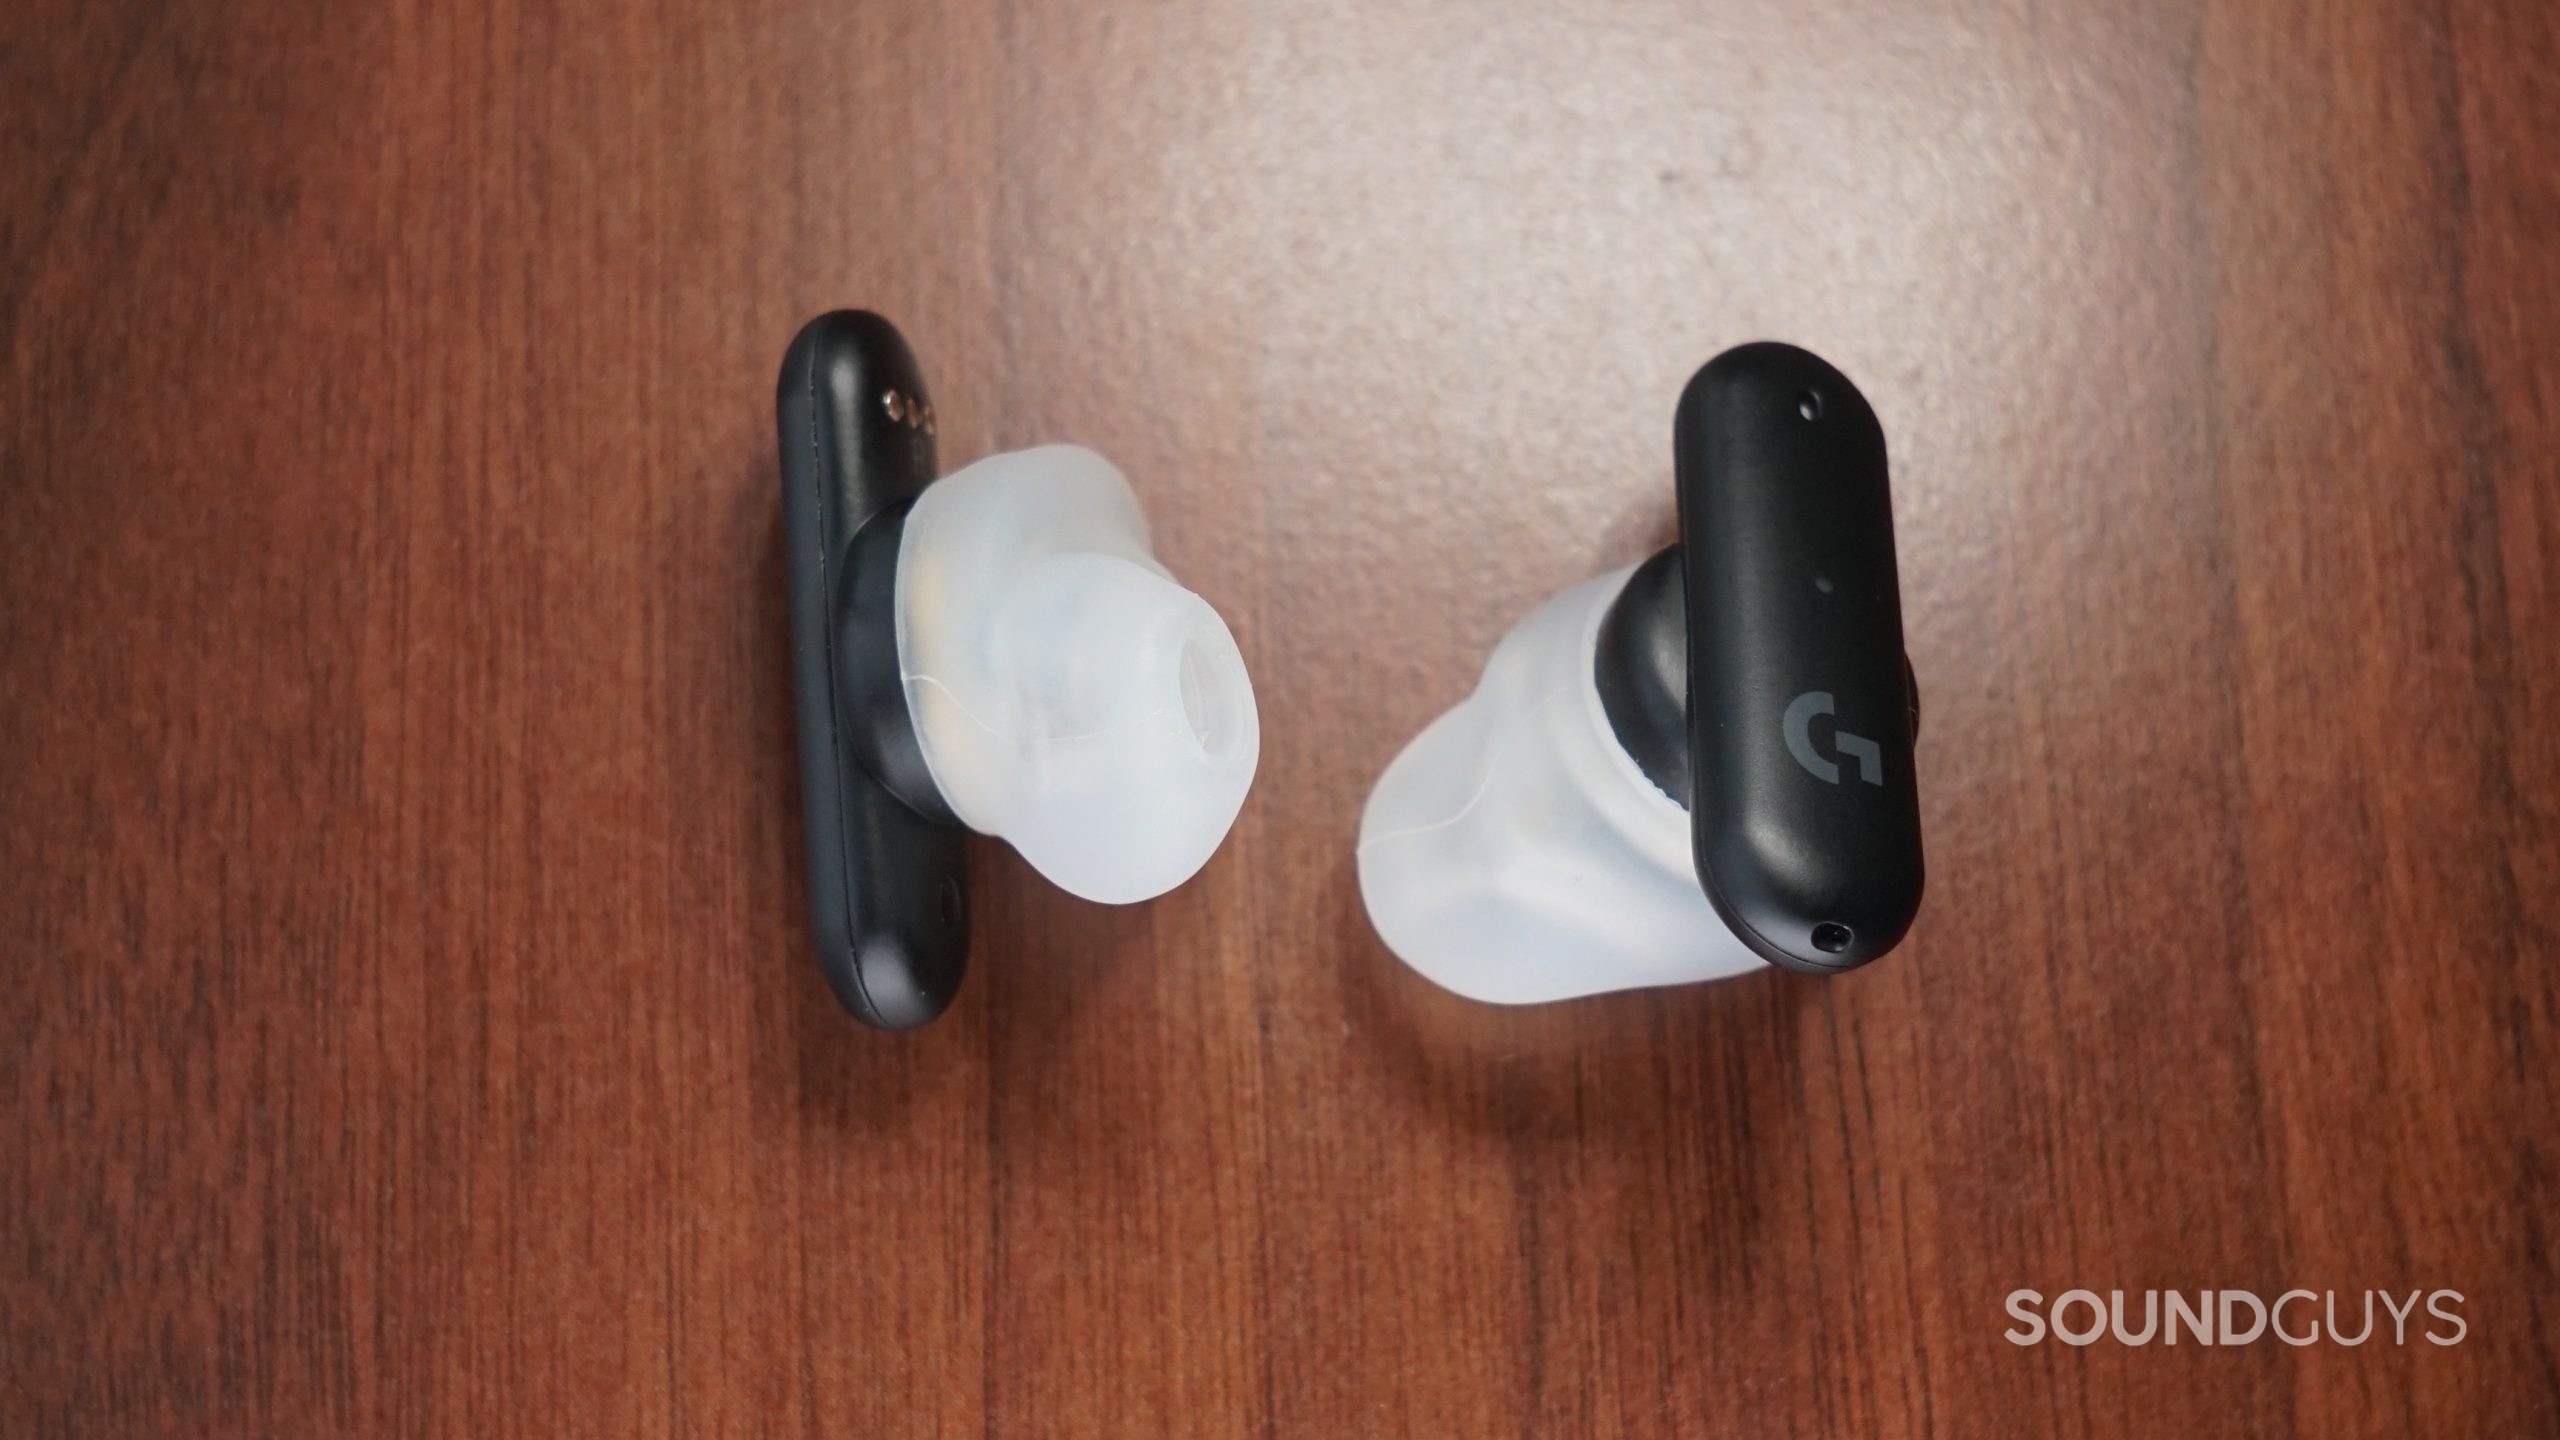 Το Logitech G ταιριάζει στα ακουστικά που βρίσκονται σε μια ξύλινη επιφάνεια